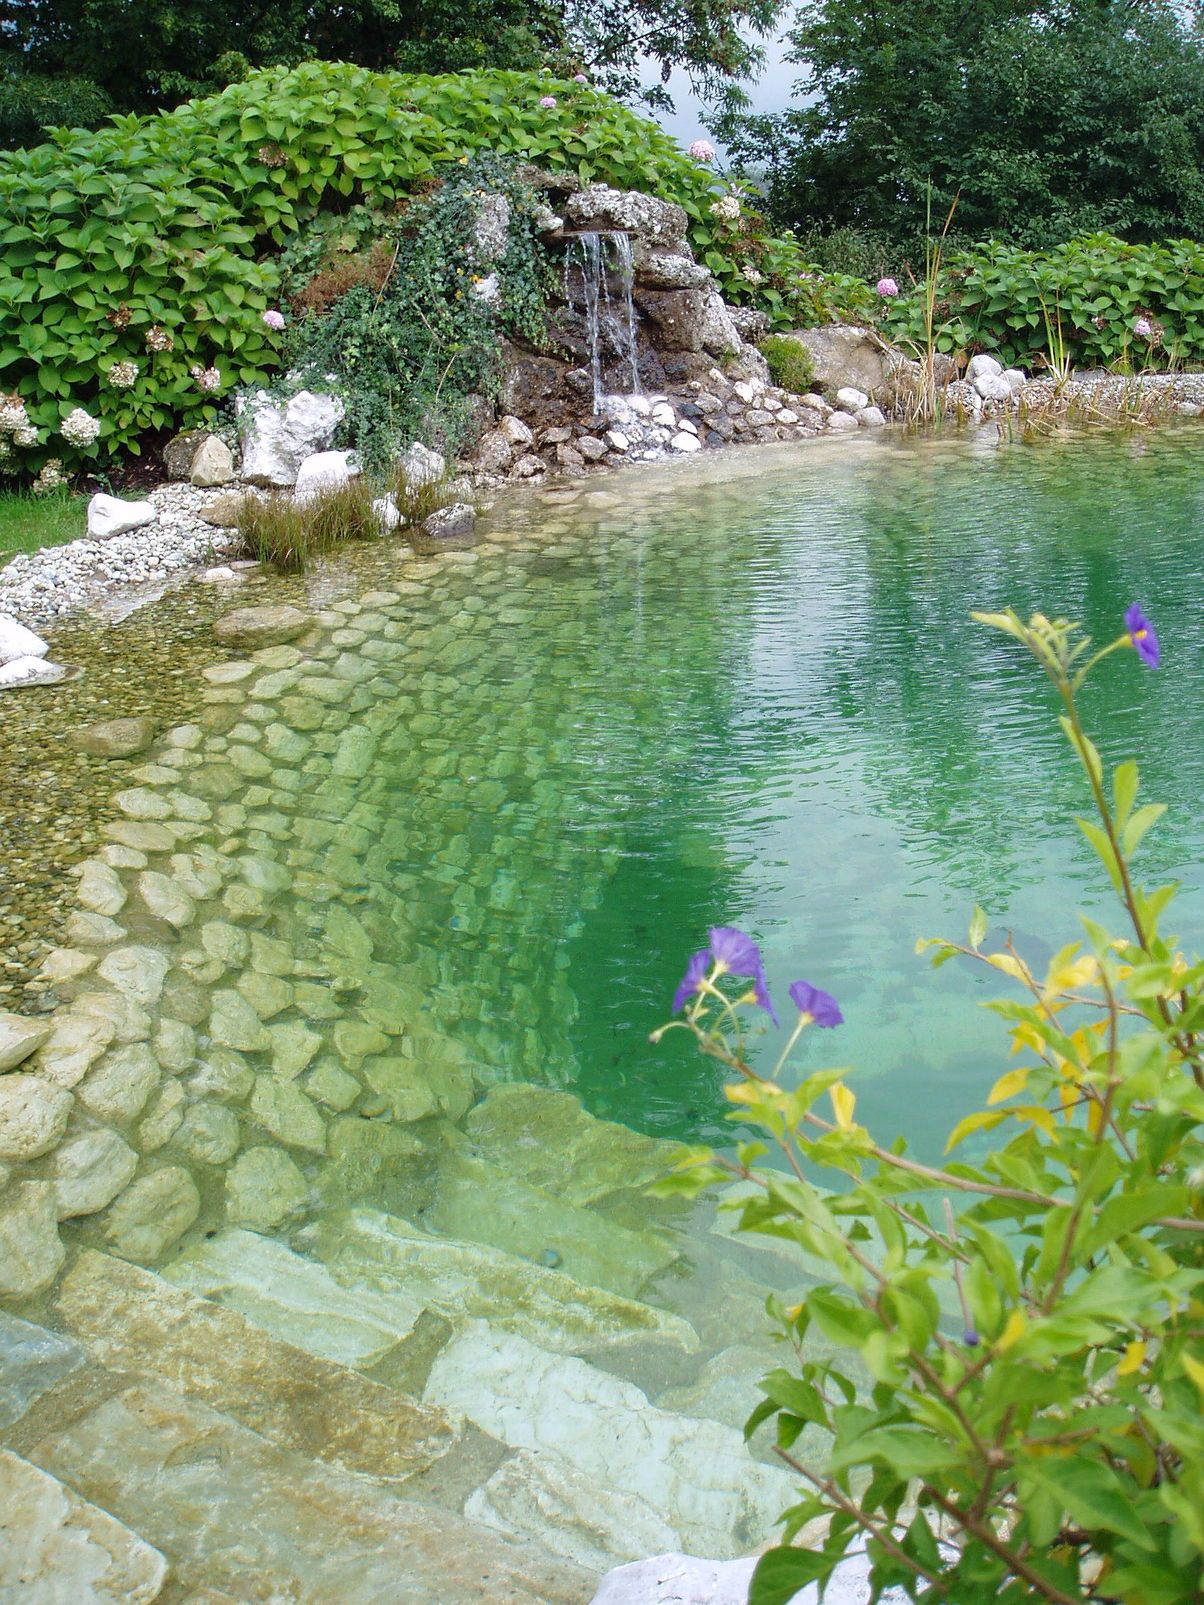 Pool Garten Gestaltung Schön Wasserfälle Biotope Teiche Gartengestaltung